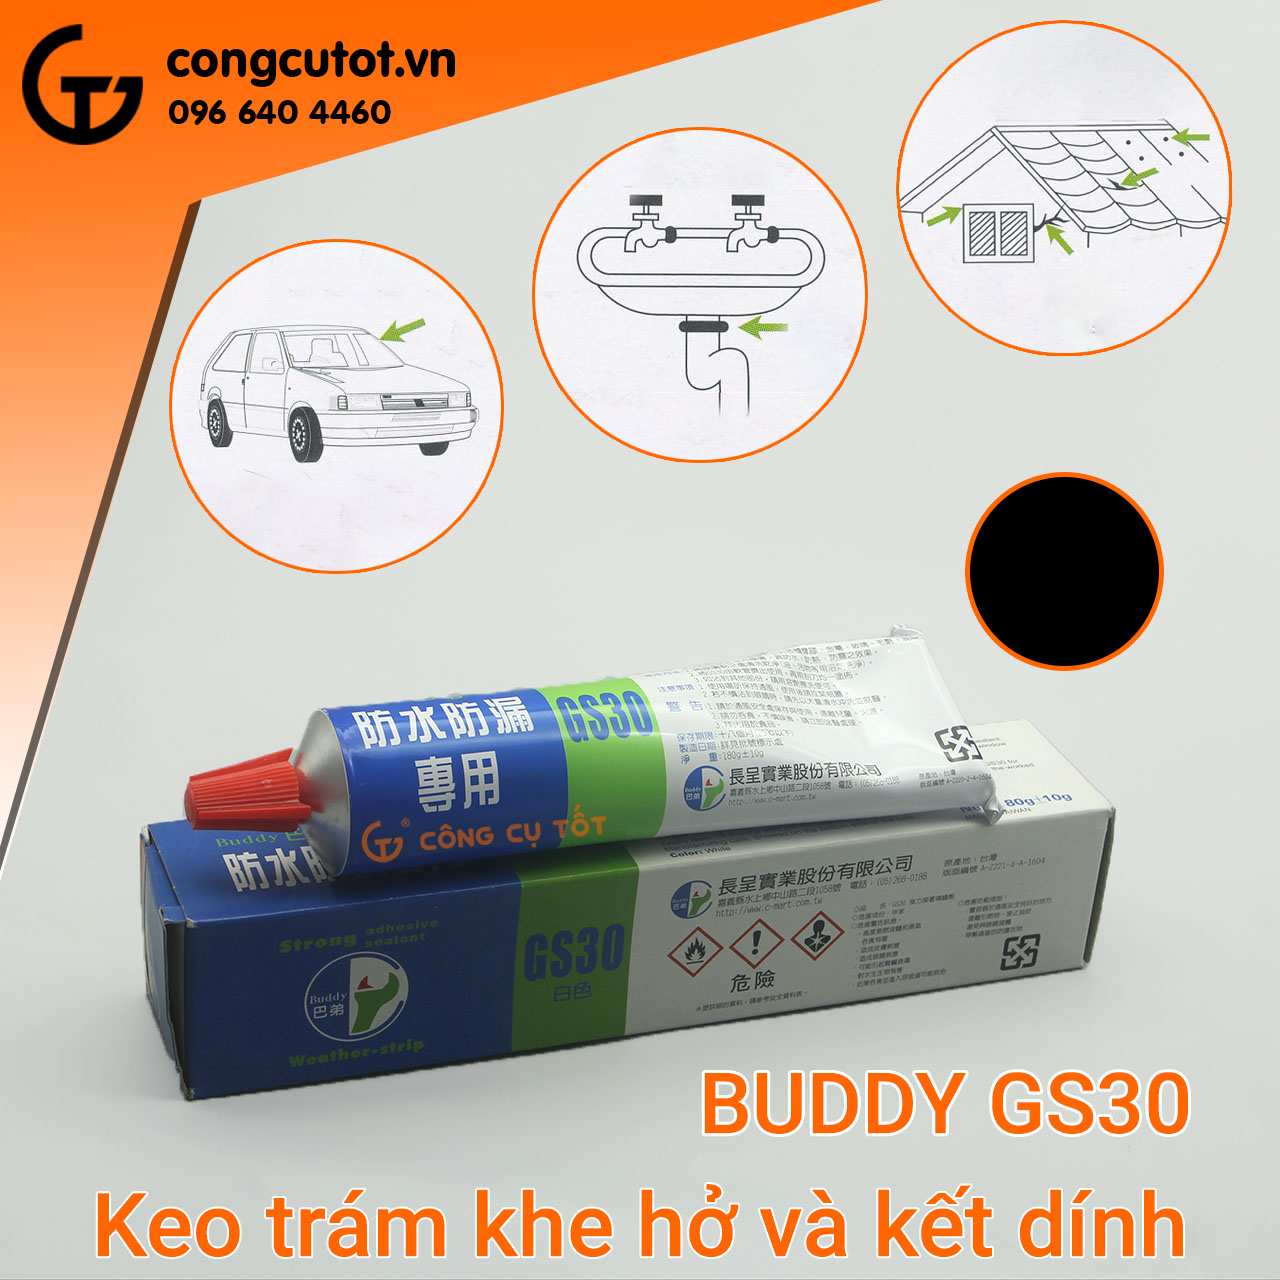 Keo trám và kết dính Buddy GS30 phù hợp với hầu hết các bề mặt vật liệu